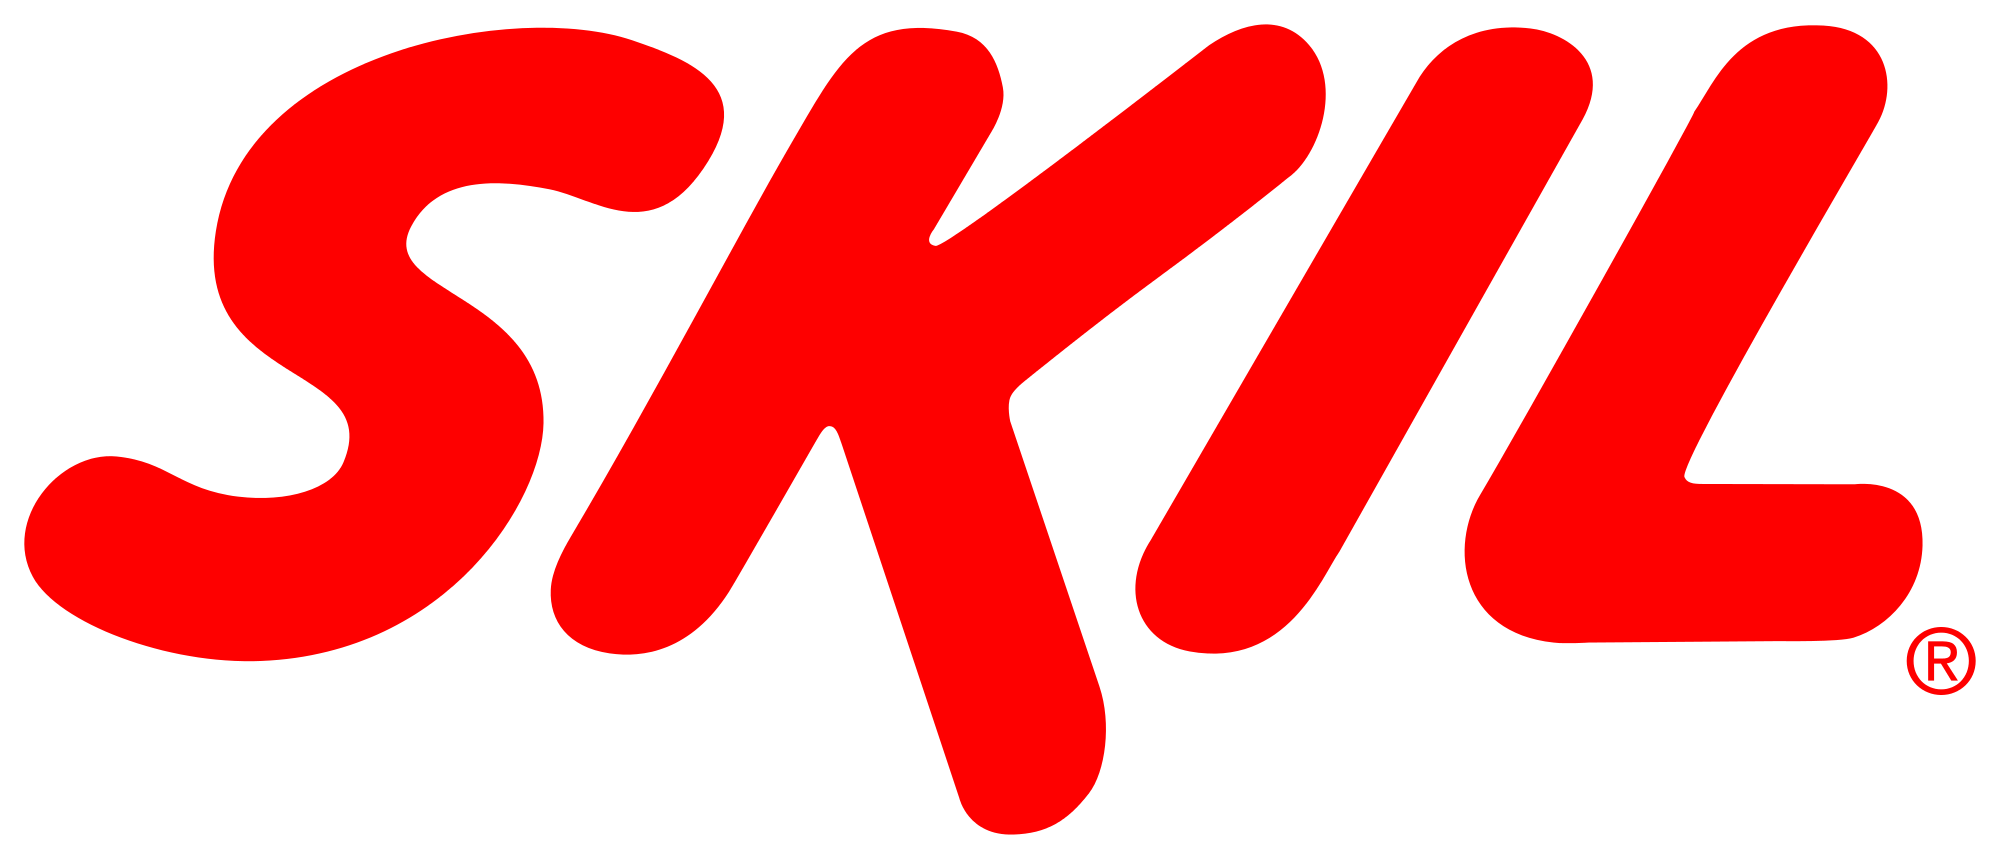 Skil_logo.svg.png